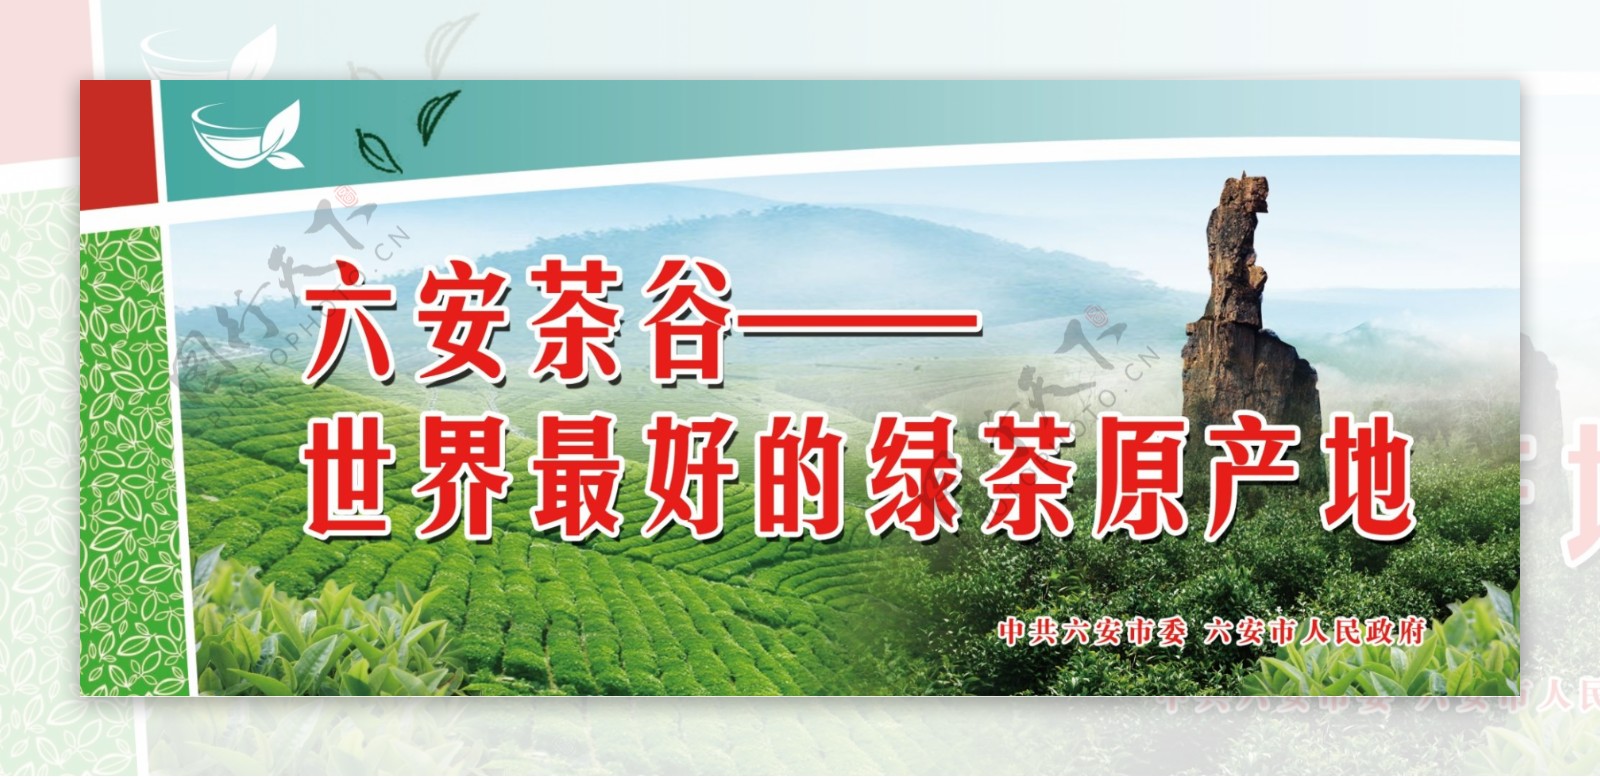 六安茶谷世界最好的绿茶原产地